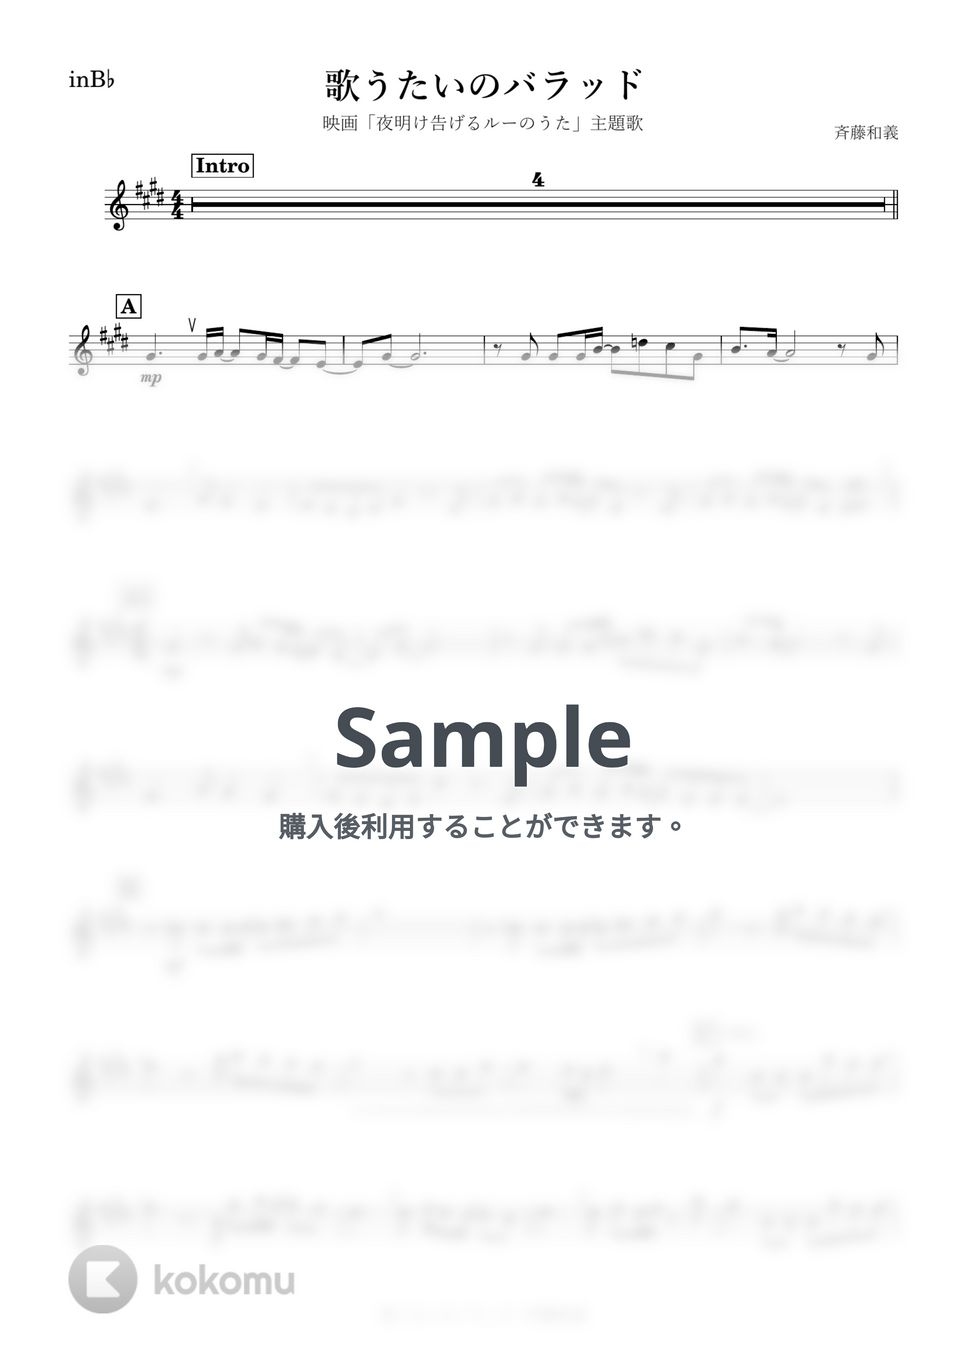 斉藤和義 - 歌うたいのバラッド (B♭) by kanamusic